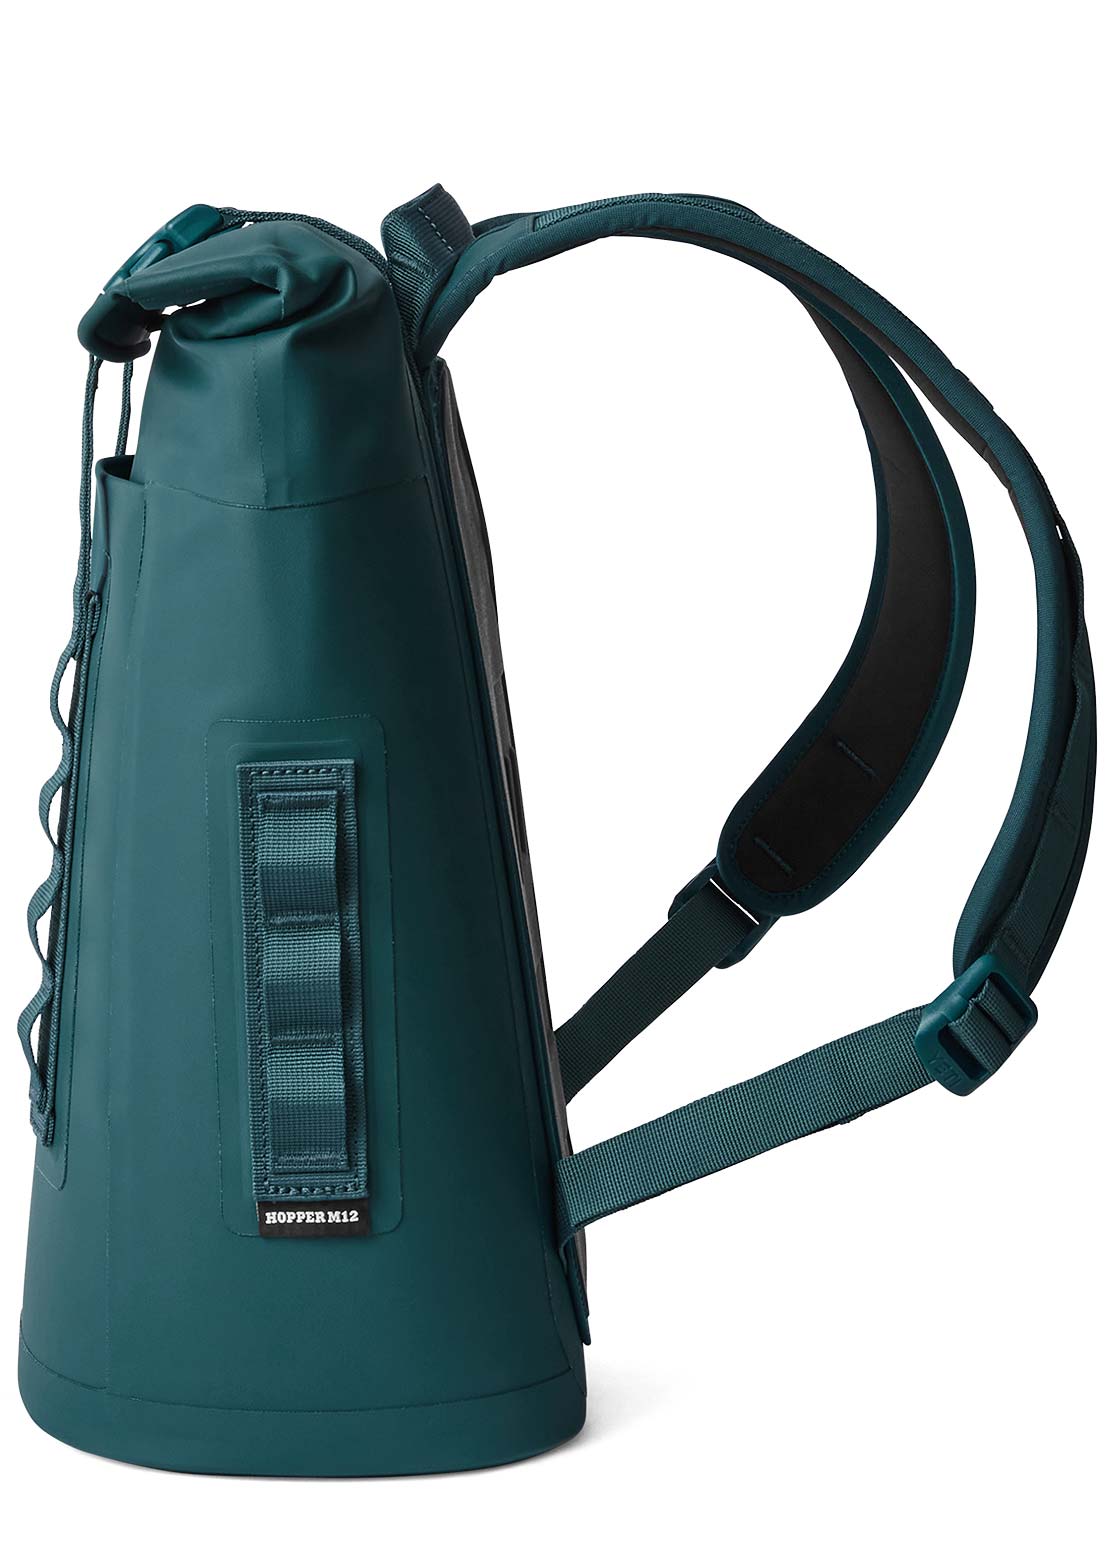 YETI Hopper Backpack M12 Soft Cooler Agave Teal